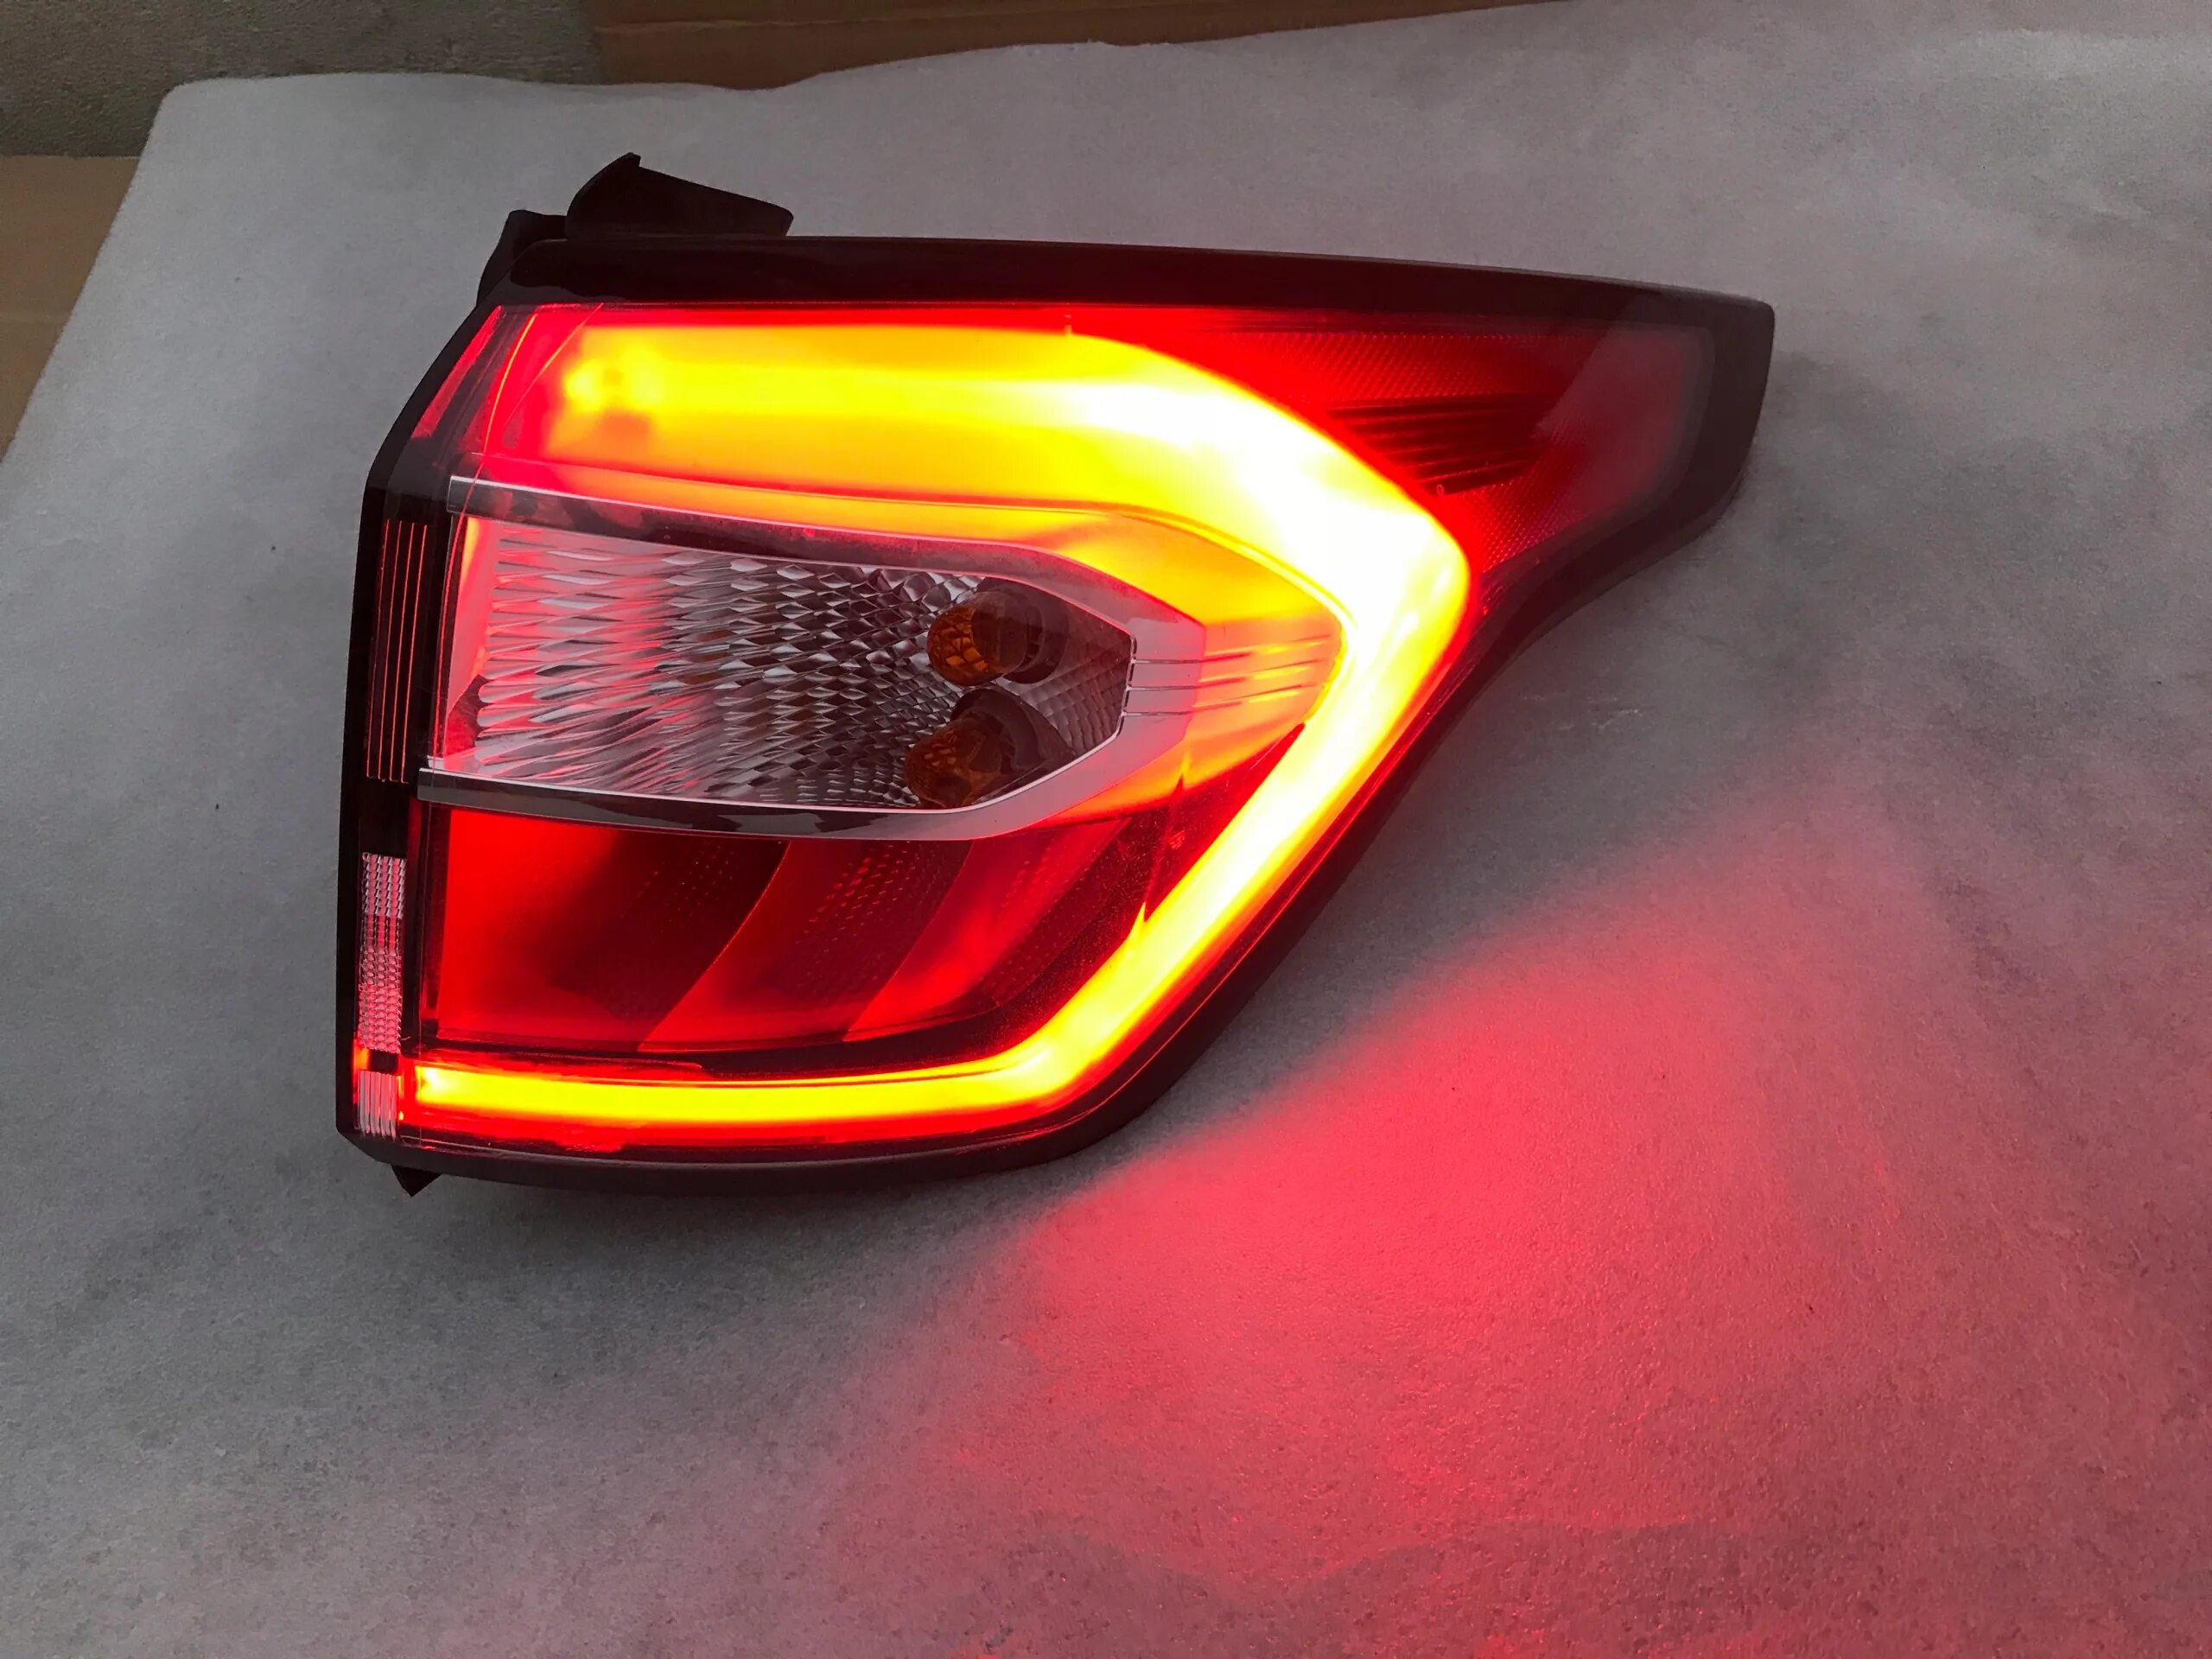 Ford Kuga 2017 фонарь задний. Форд Куга 2018 фонарь задний. Kuga 2 Рестайлинг задние фонари. Kuga 2 фонари led.